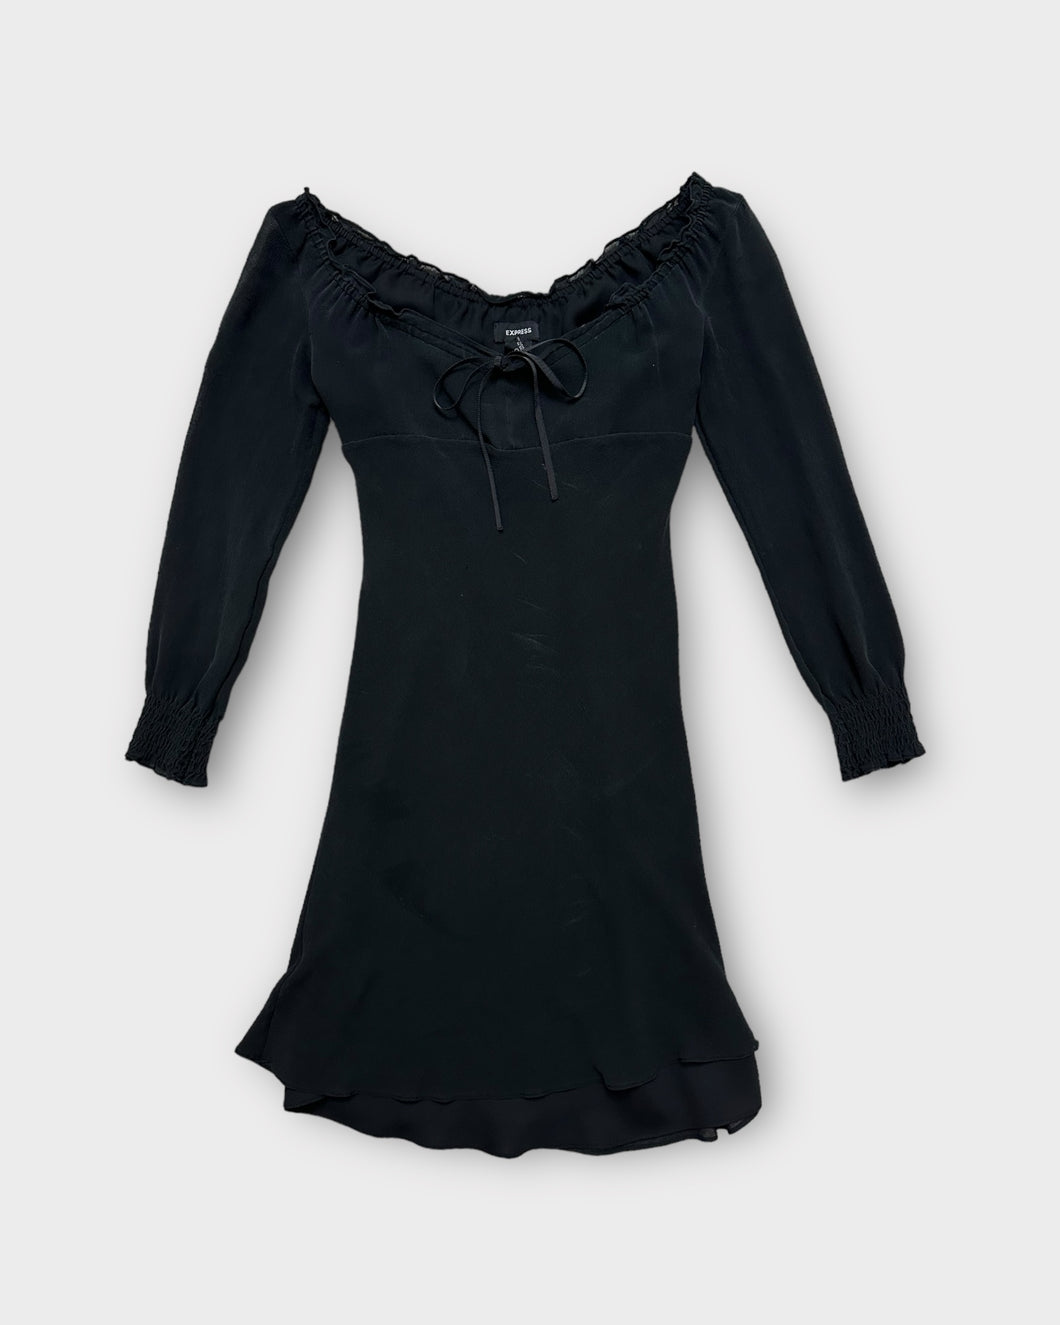 Express Black Silk Babydoll Mini Dress (S)